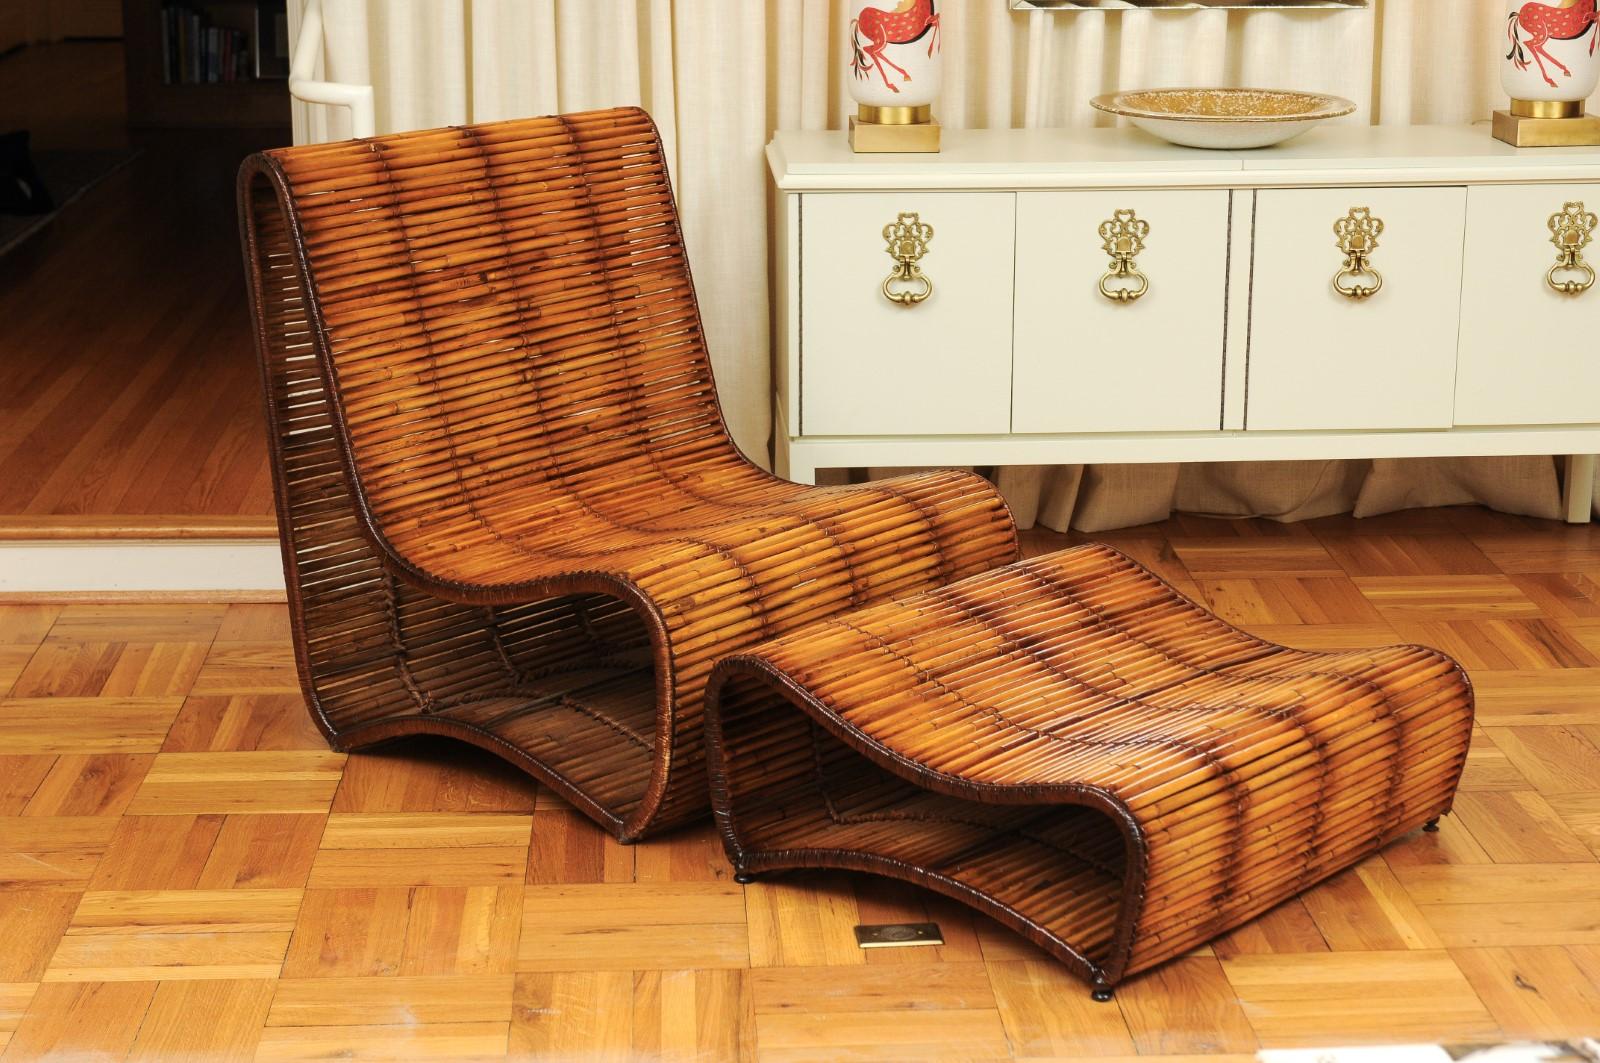 Une rare et majestueuse chaise pantoufle à grande échelle et un ottoman par le grand Danny Ho Fong pour Tropi-cal, vers 1970. Lourd cadre en fer forgé, fini en bambou, avec de jolis accents de canne. Une conception, un choix de matériaux et un